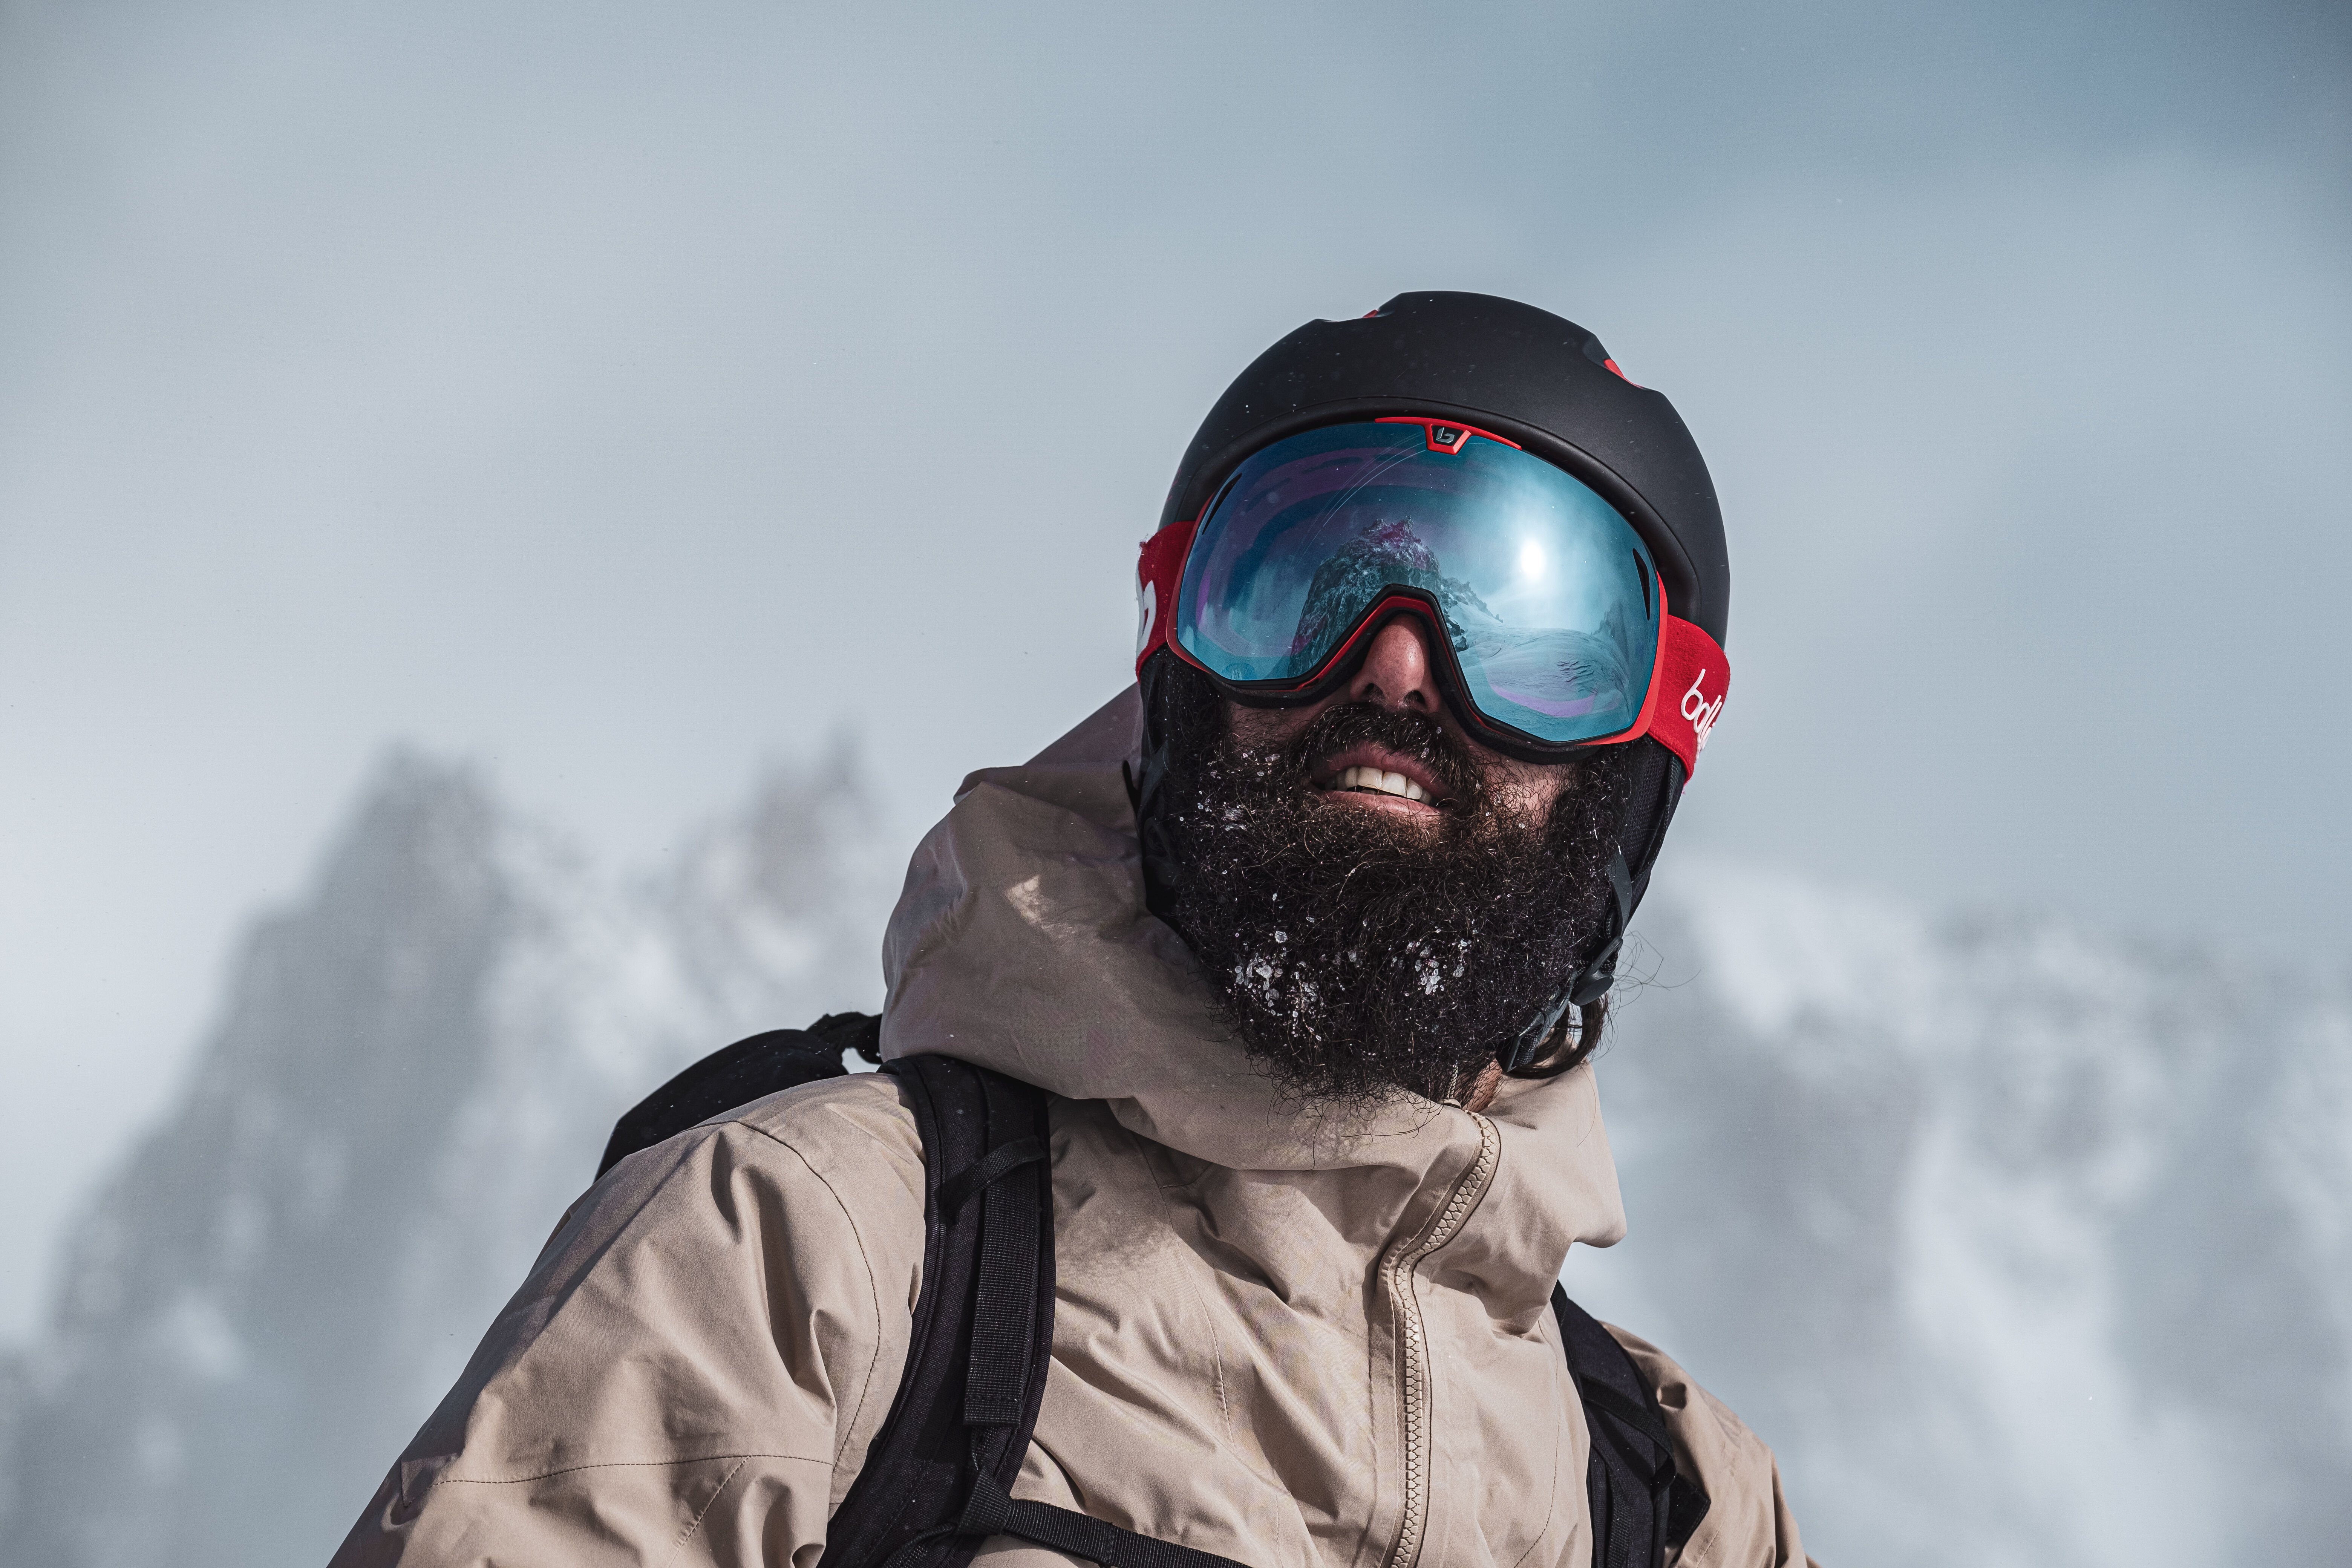 EXP VISION Masque de Ski Pro Anti-buée Lunettes de Ski, 100